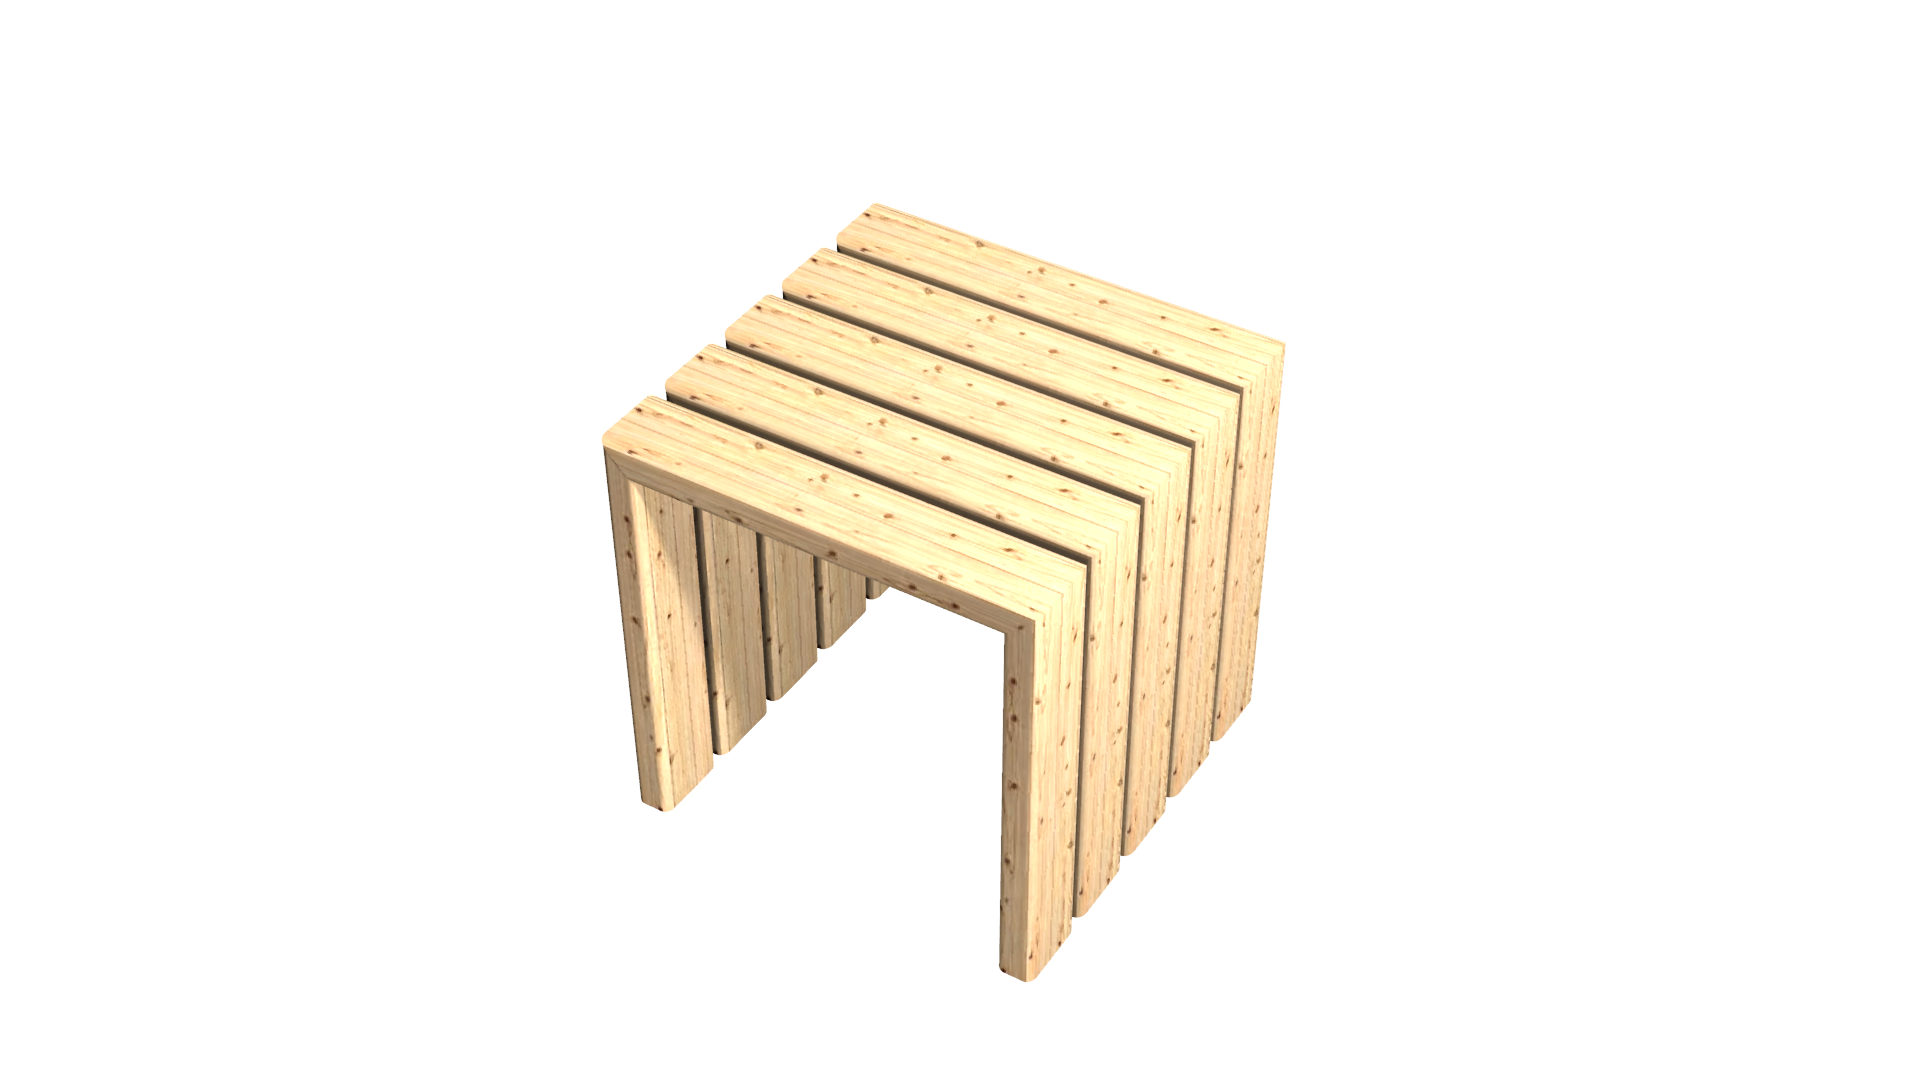 3dモデリング素材フリーダウンロード 木製のboxタイプの椅子 動画 3dcg映像 3dデータ素材を無料フリーダウンロード Malisen Lab